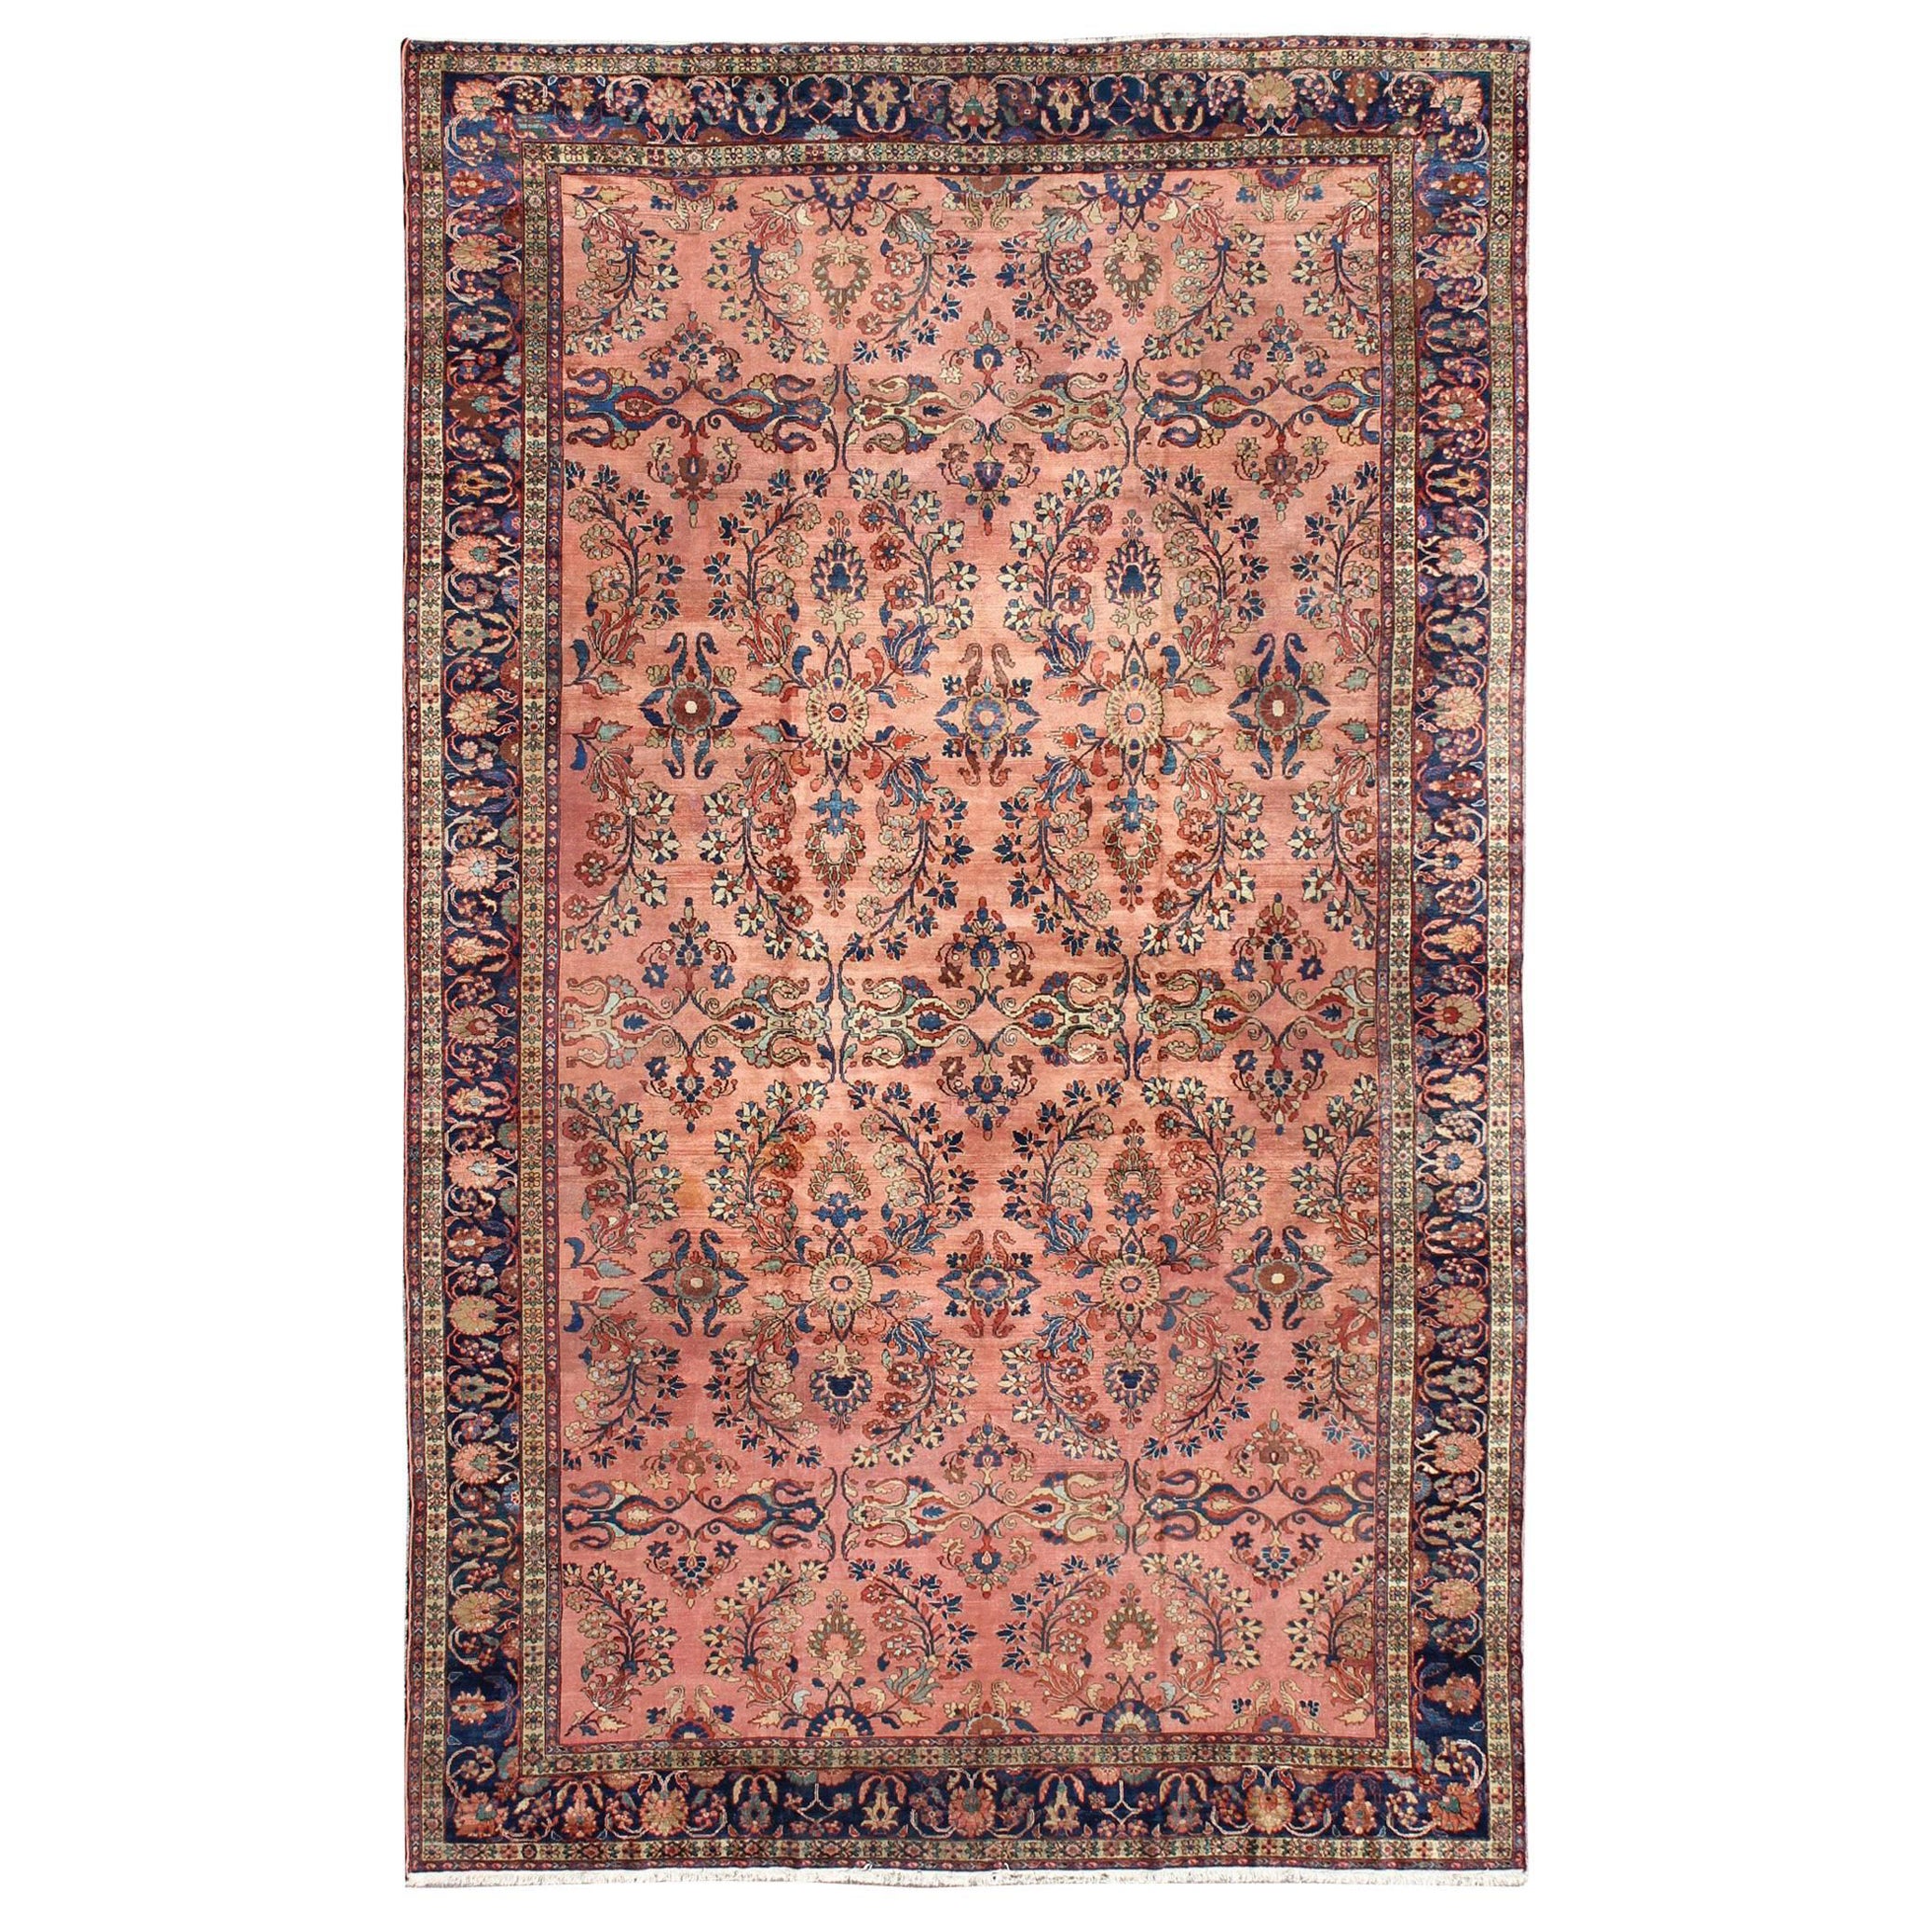 Großer antiker persischer Lilihan-Teppich in den Farben Lachs, Blau, Grün, Gelb und Rost